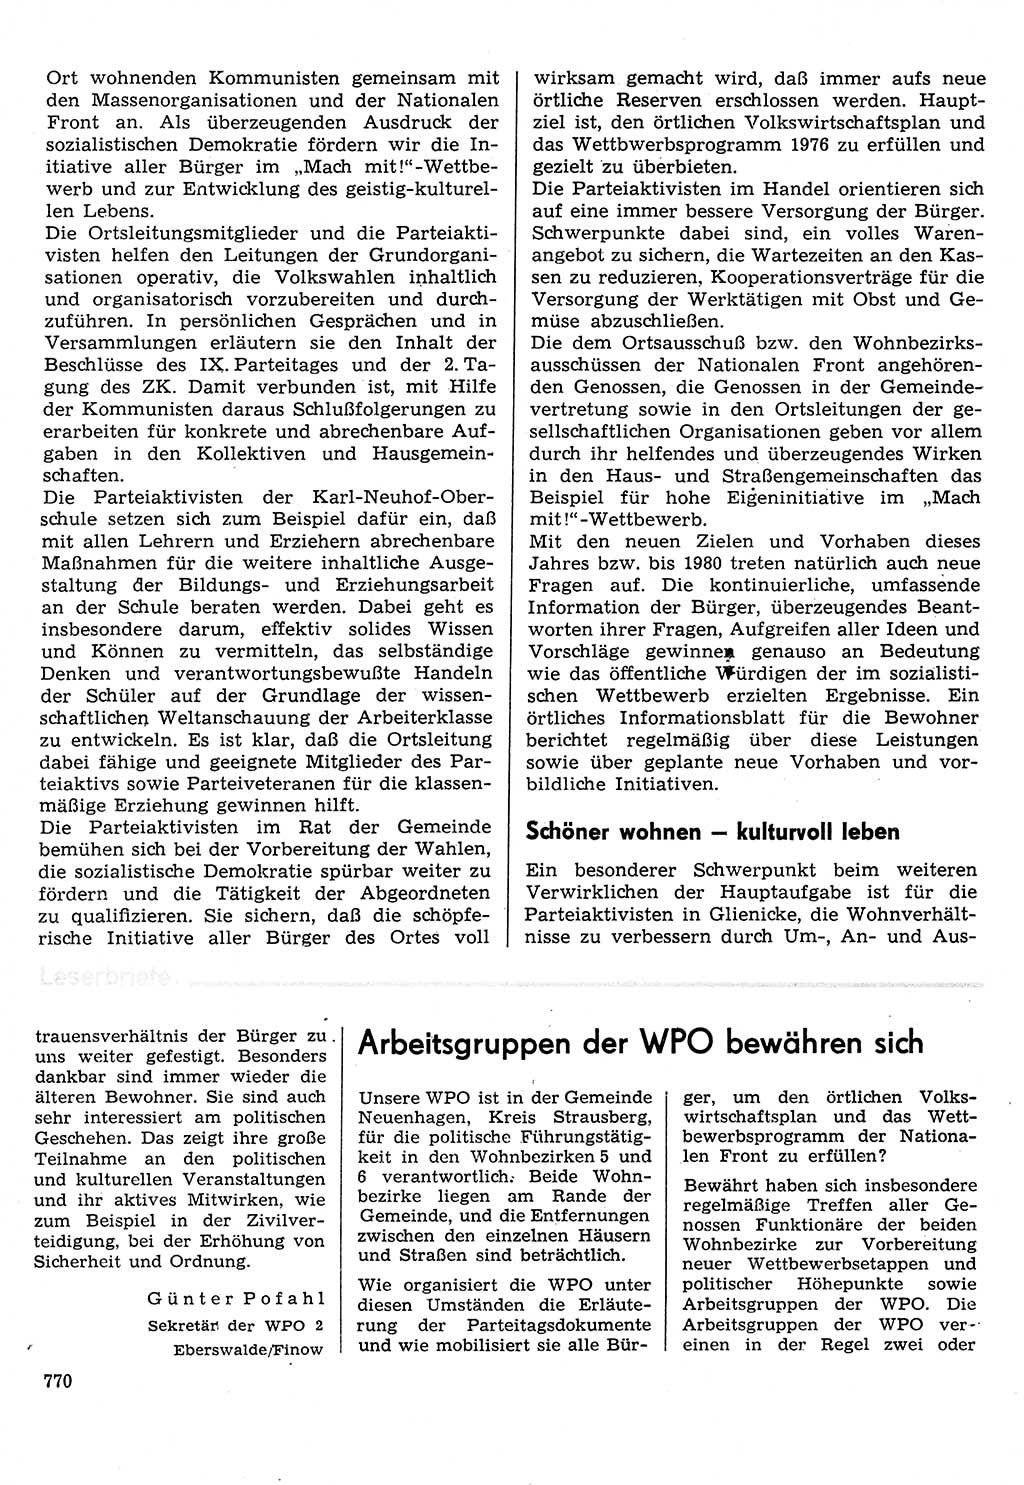 Neuer Weg (NW), Organ des Zentralkomitees (ZK) der SED (Sozialistische Einheitspartei Deutschlands) für Fragen des Parteilebens, 31. Jahrgang [Deutsche Demokratische Republik (DDR)] 1976, Seite 770 (NW ZK SED DDR 1976, S. 770)